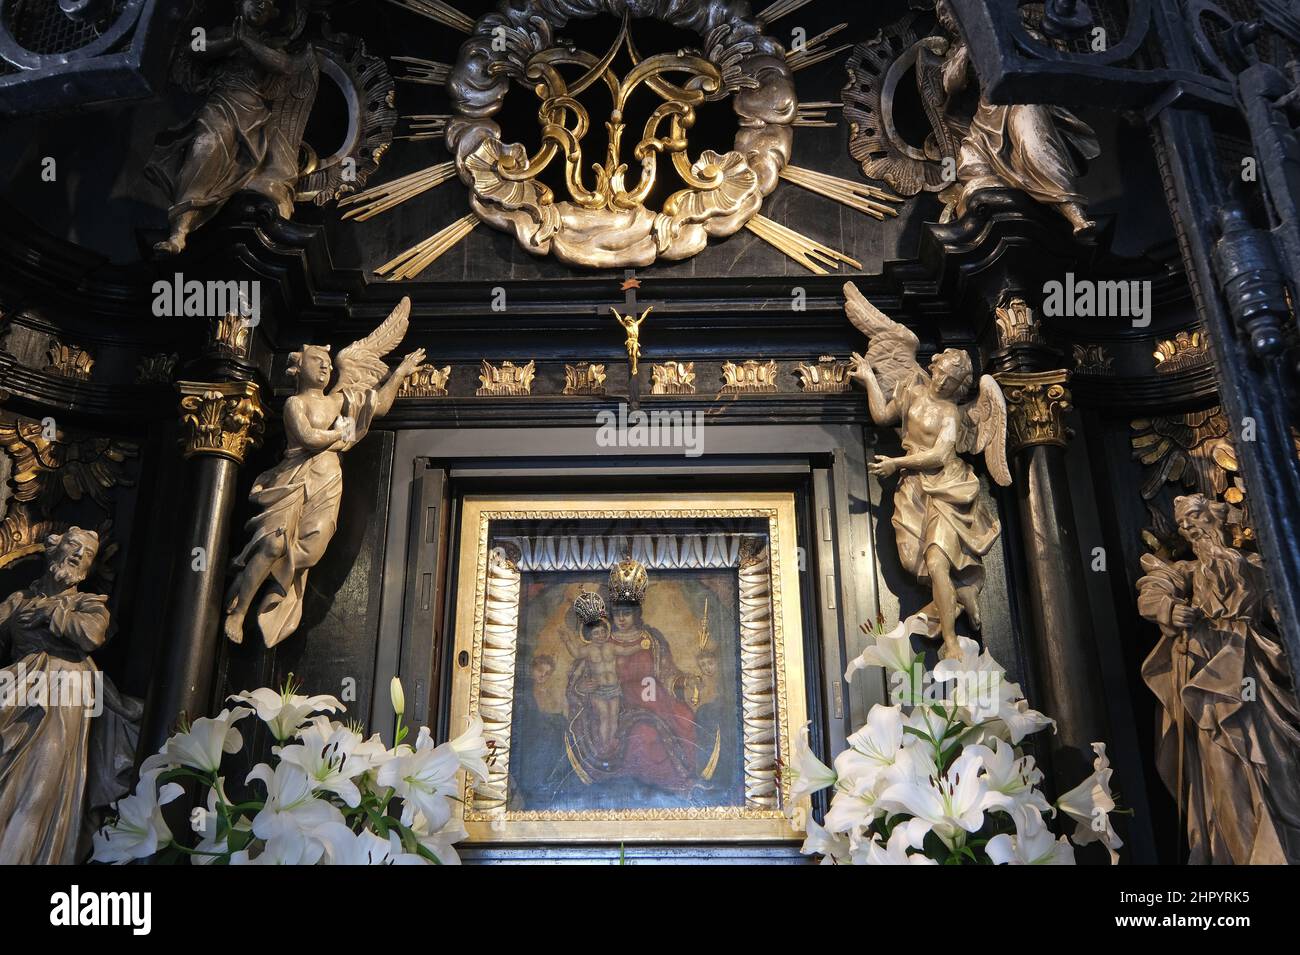 Altar de Nuestra Señora de la Kamenita Vrata en la capilla de Nuestra Señora de la Kamenita vrata (Puerta de Piedra) en Zagreb, Croacia Foto de stock